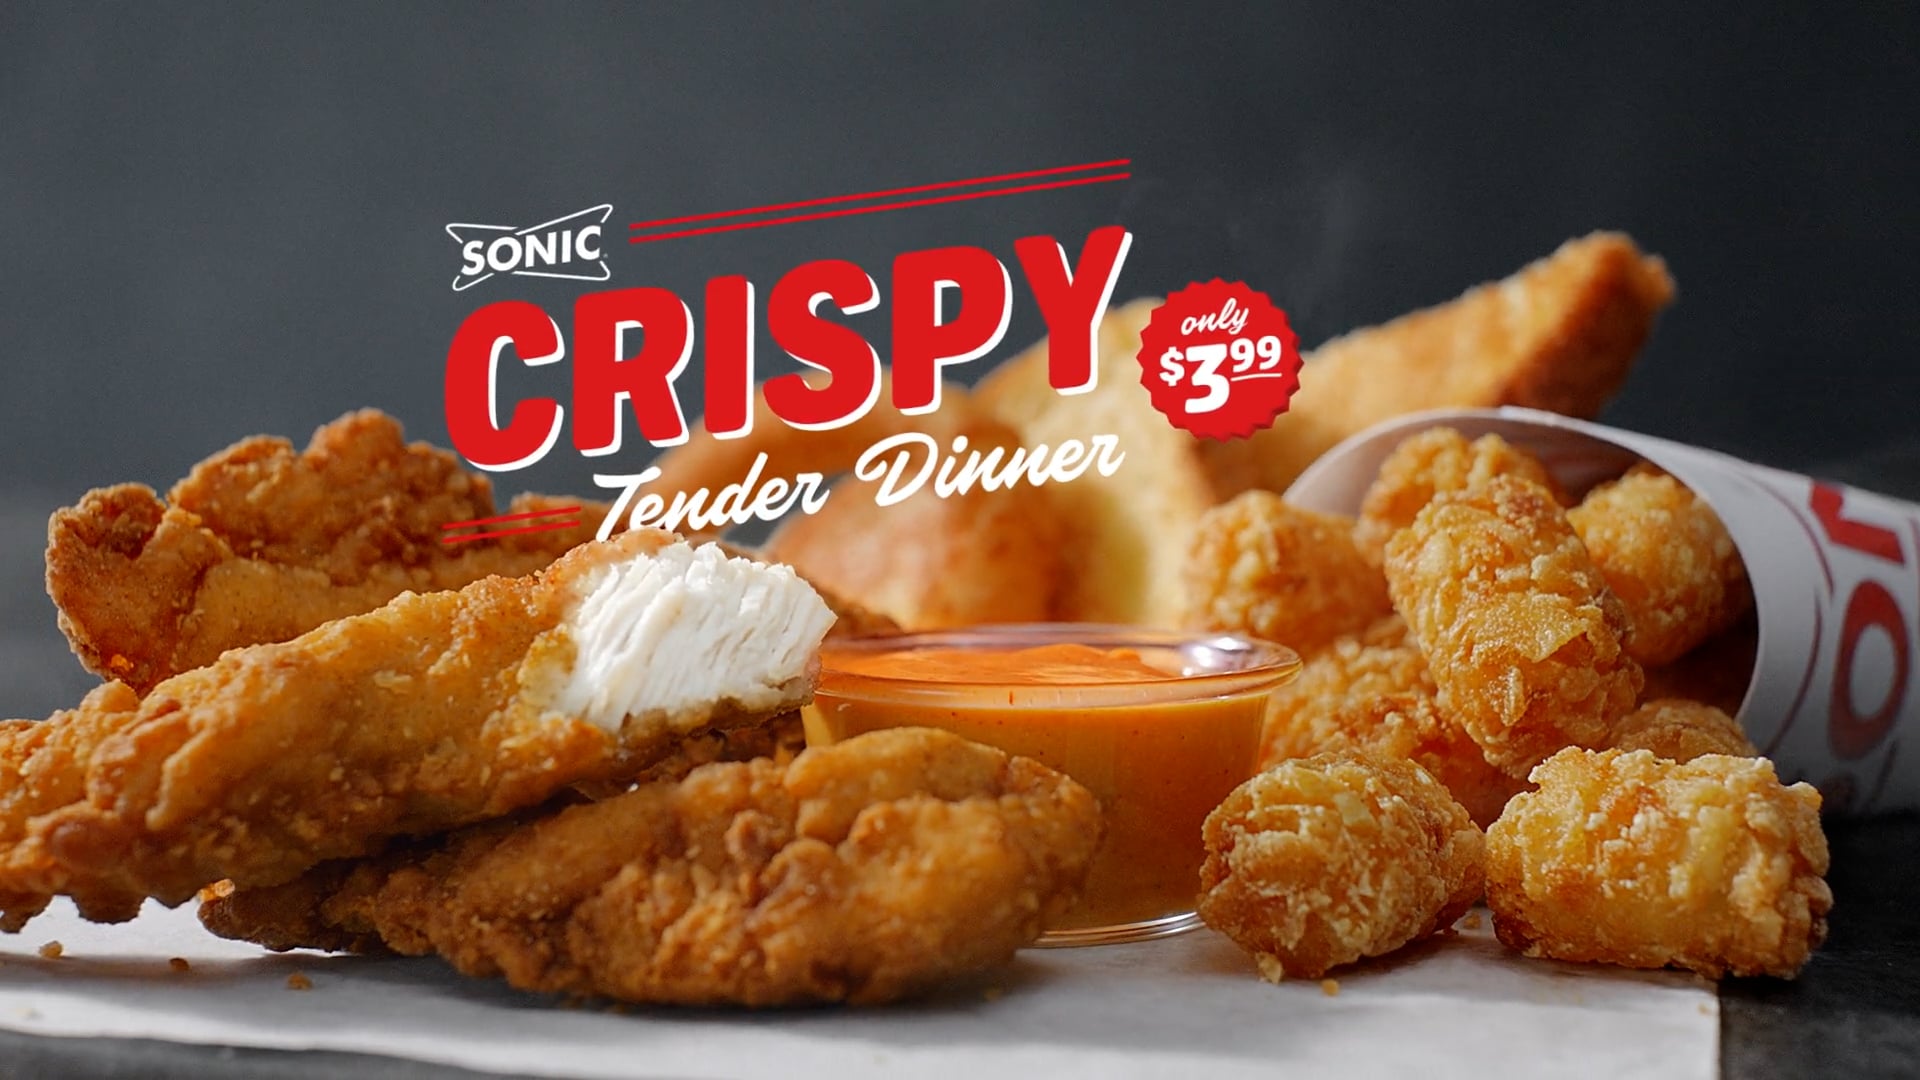 Sonic "Crispy Tender Dinner"